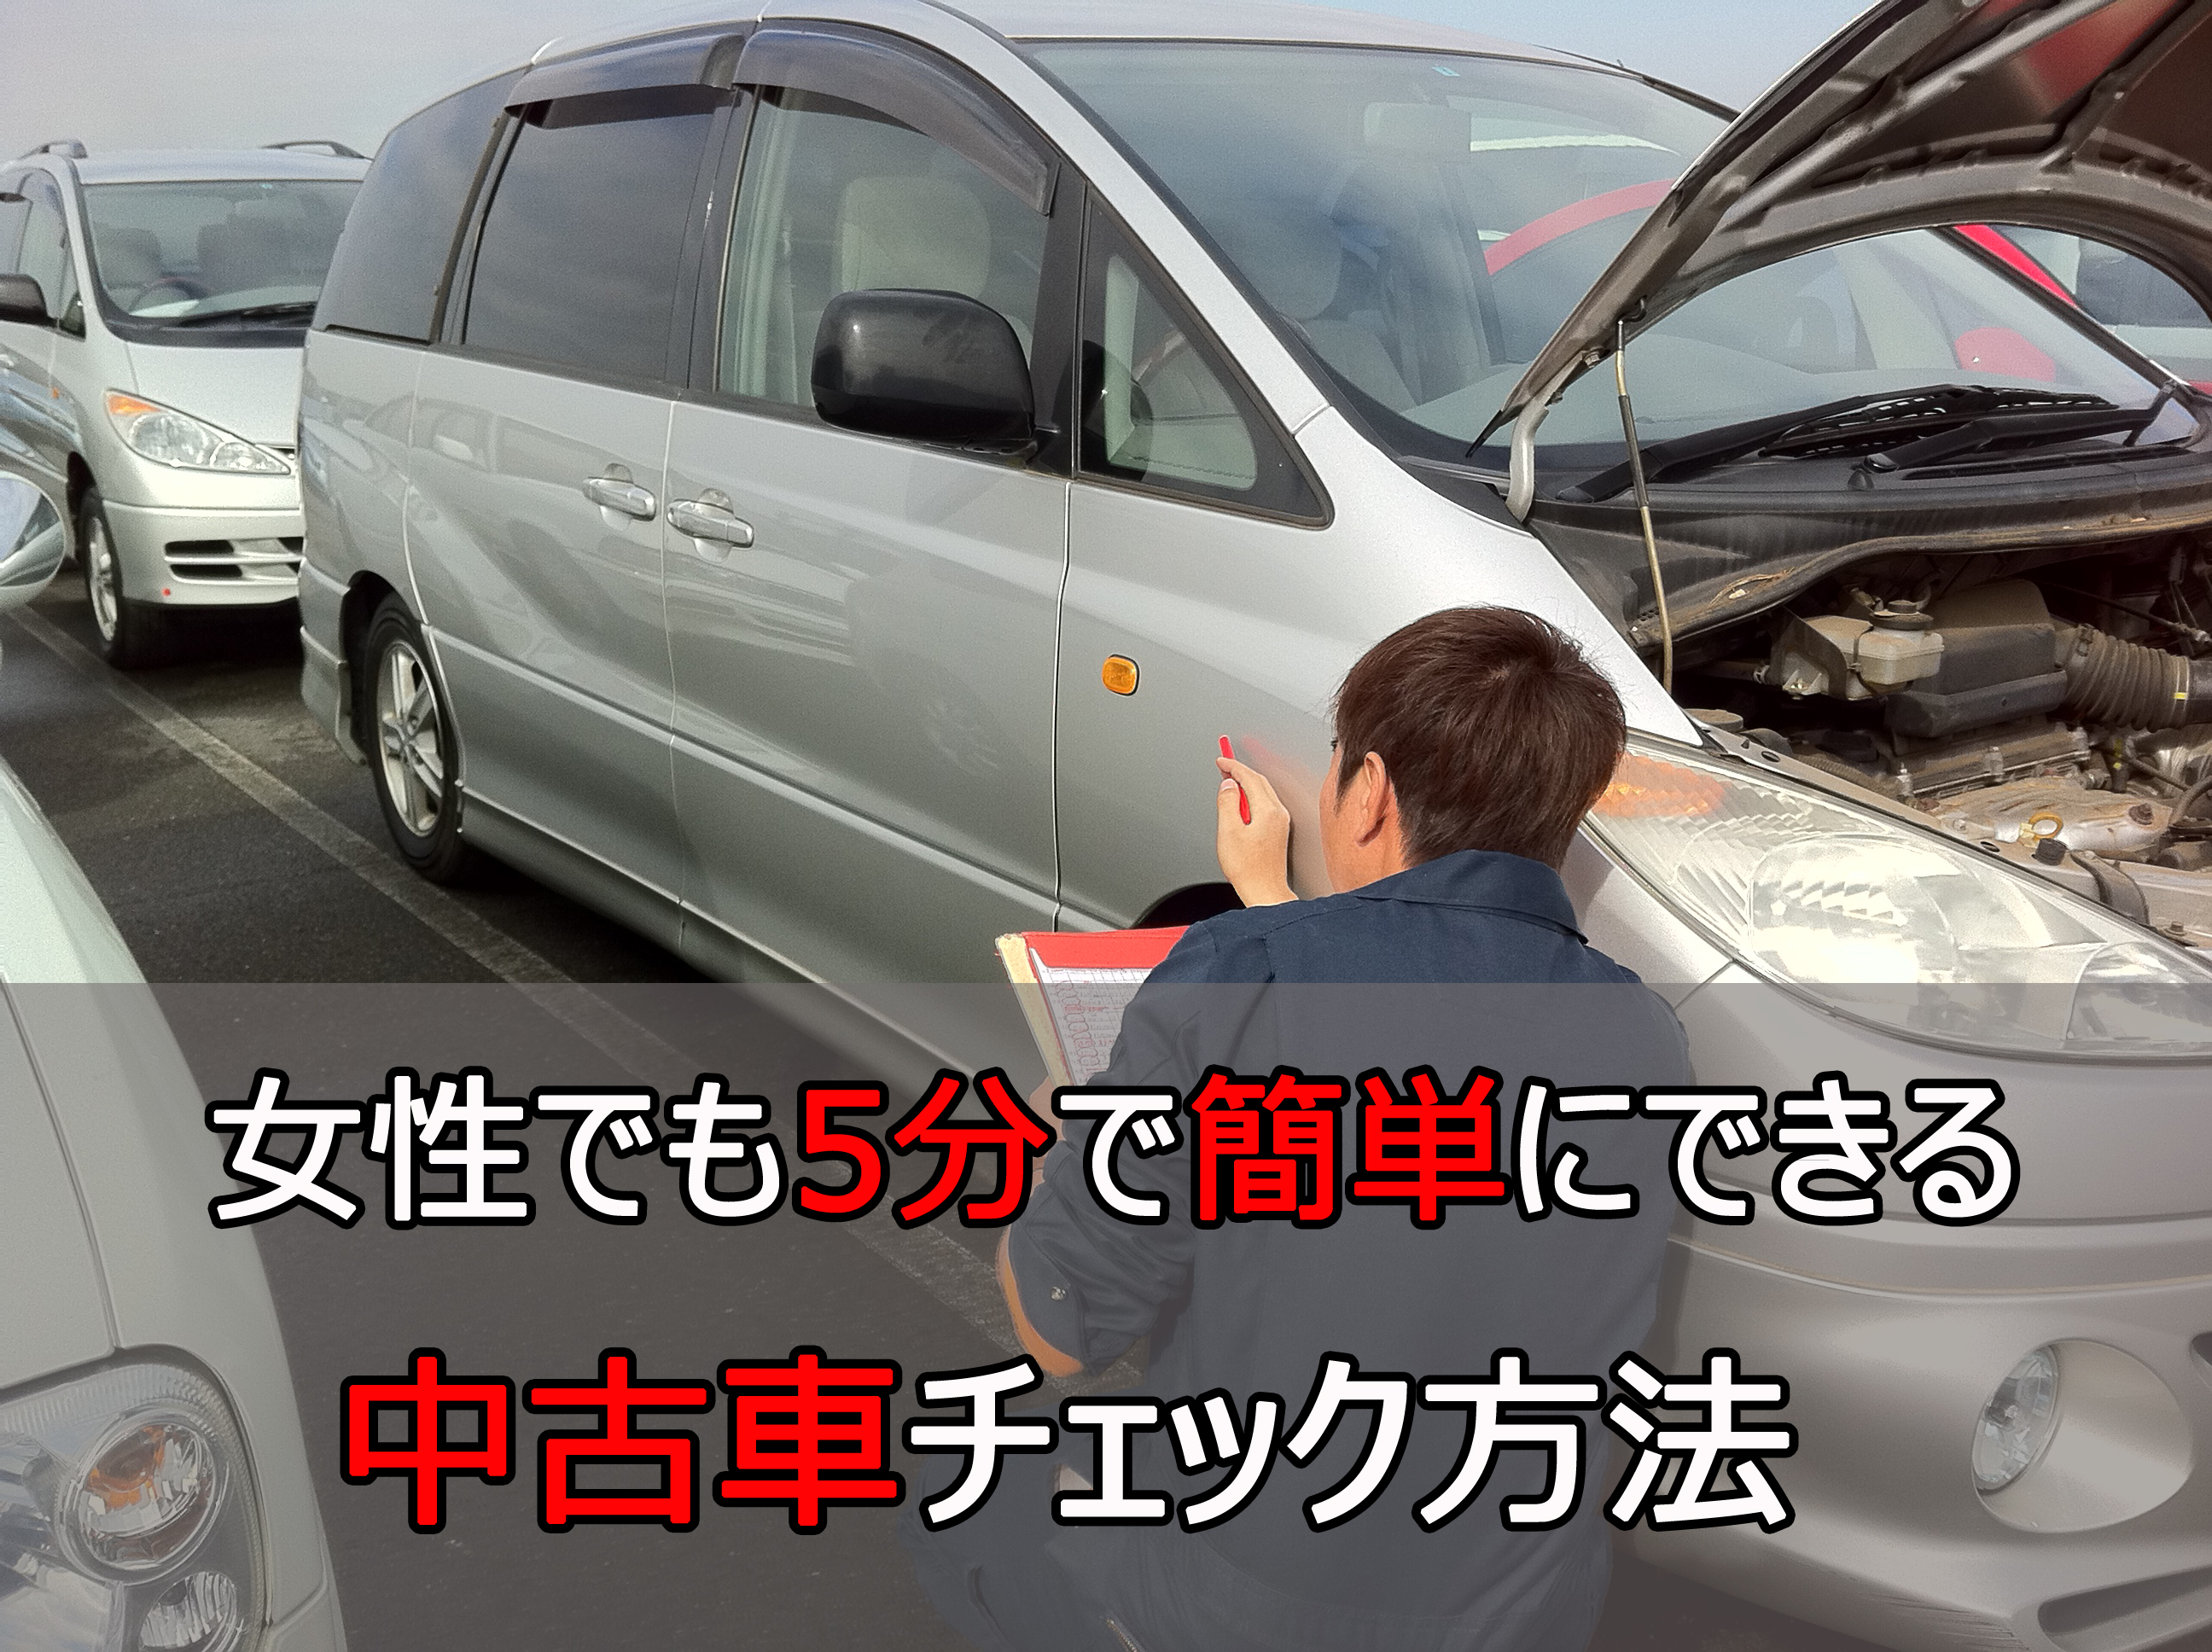 中古車を買うときにネットのコミコミ価格に騙されないで 埼玉にある中古車屋のプロが教えるミニバン選択基準